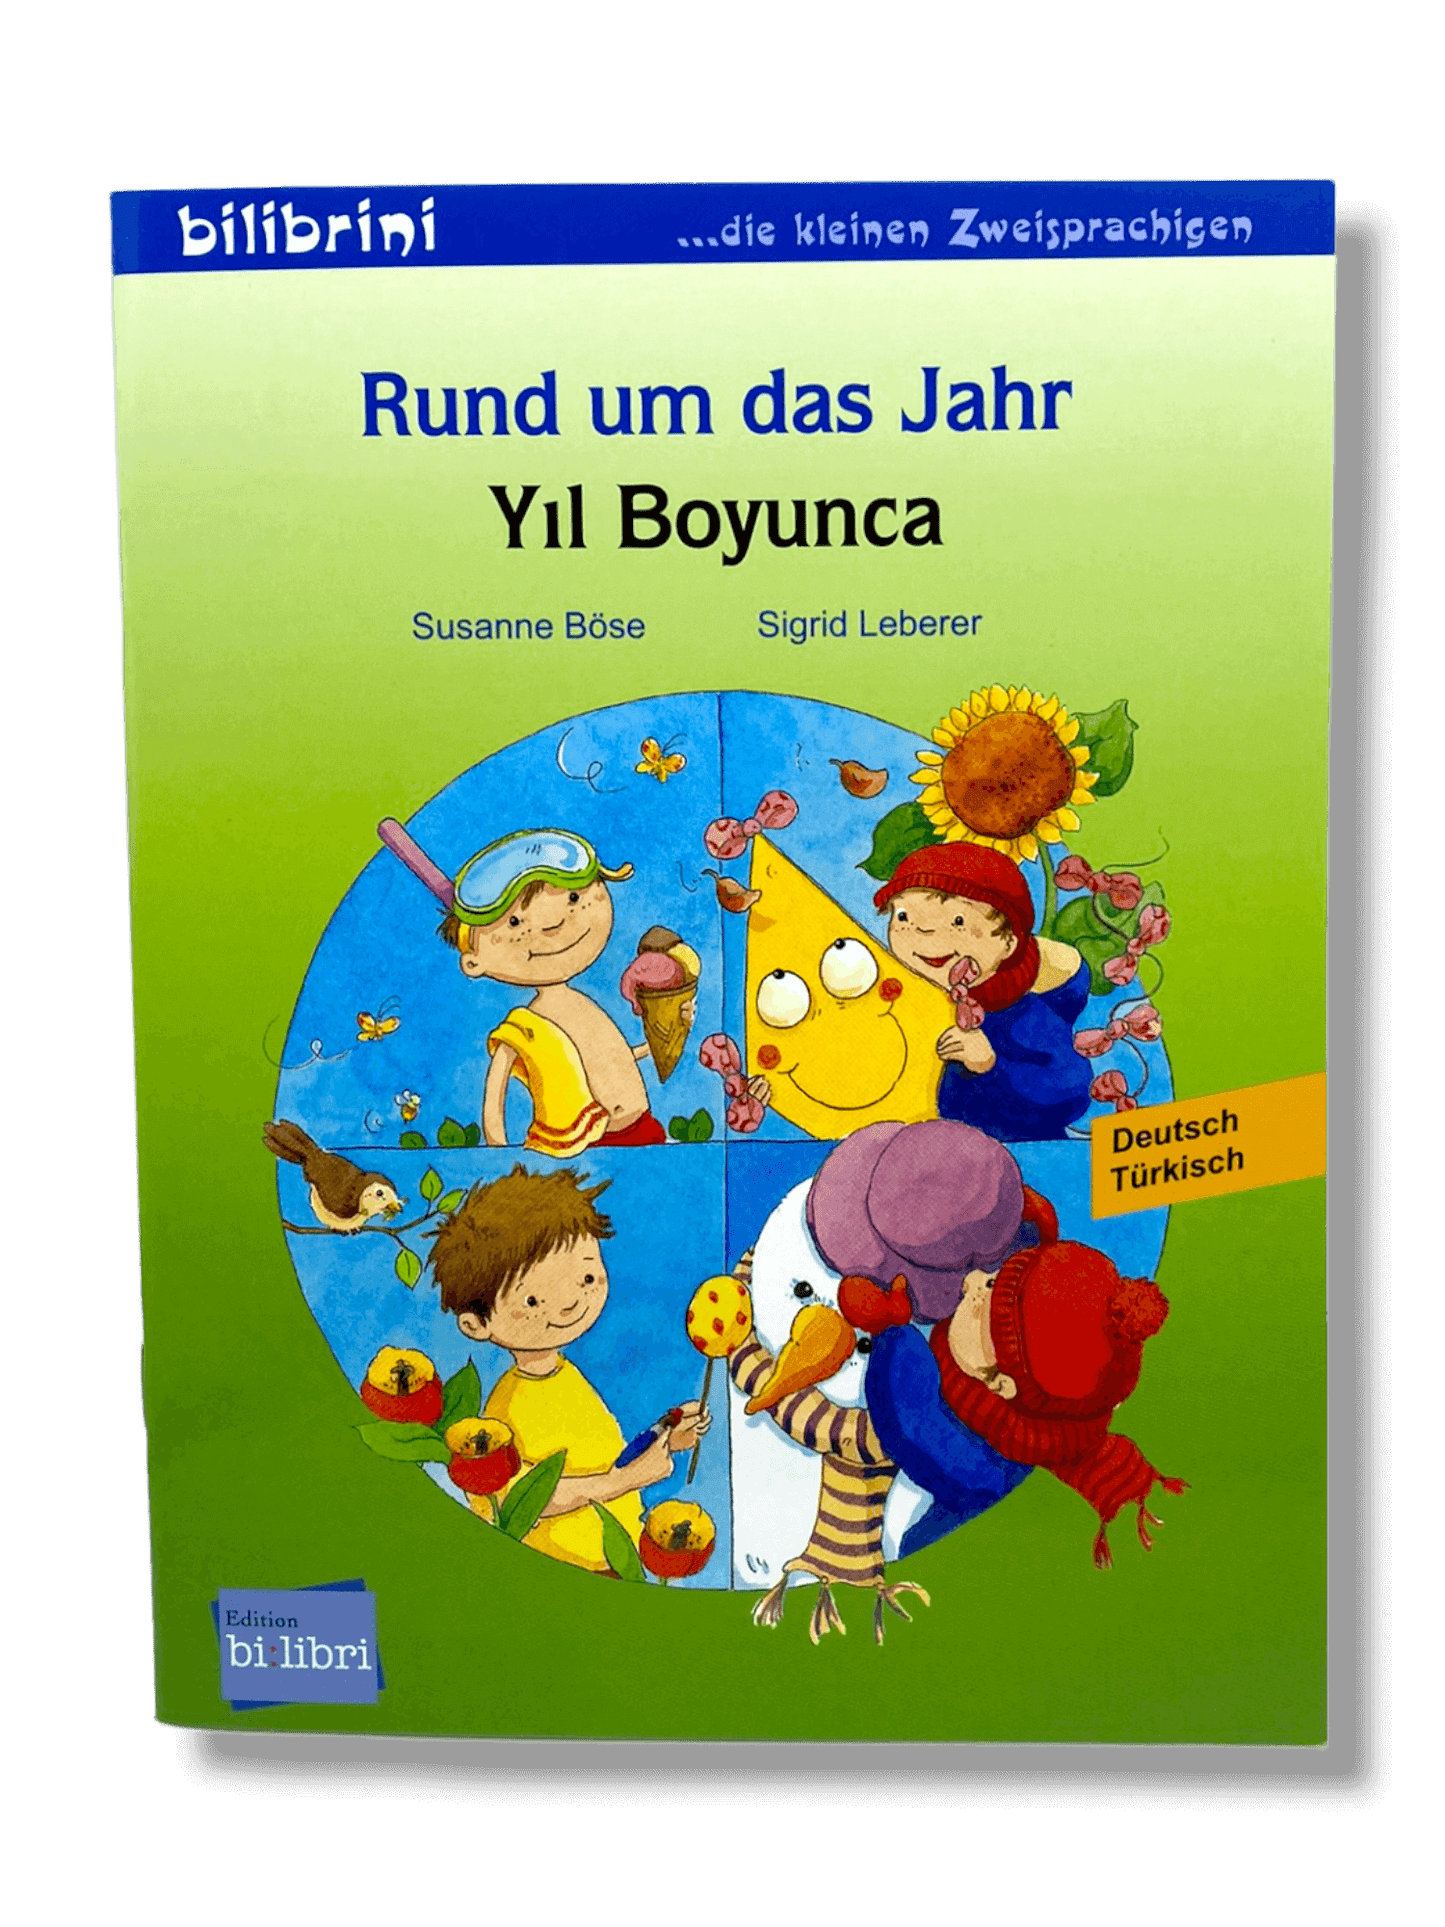 Rund um das Jahr - Yil boyunca Türkisch/Deutsch